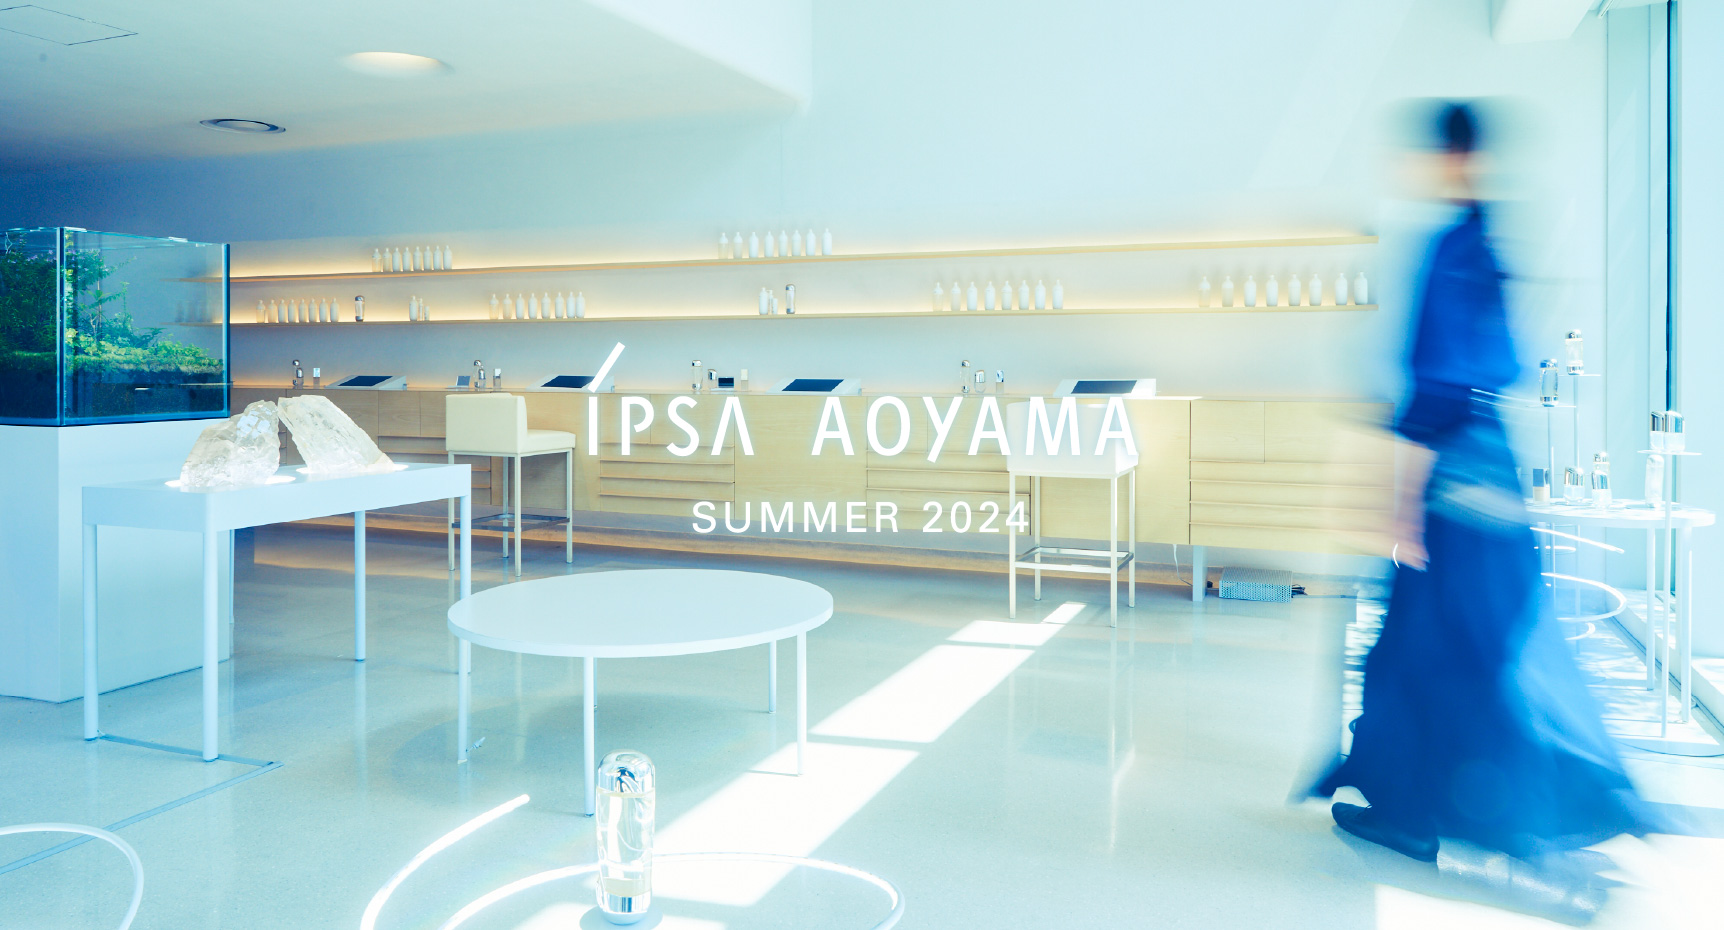 IPSA Aoyama Autumn 2022